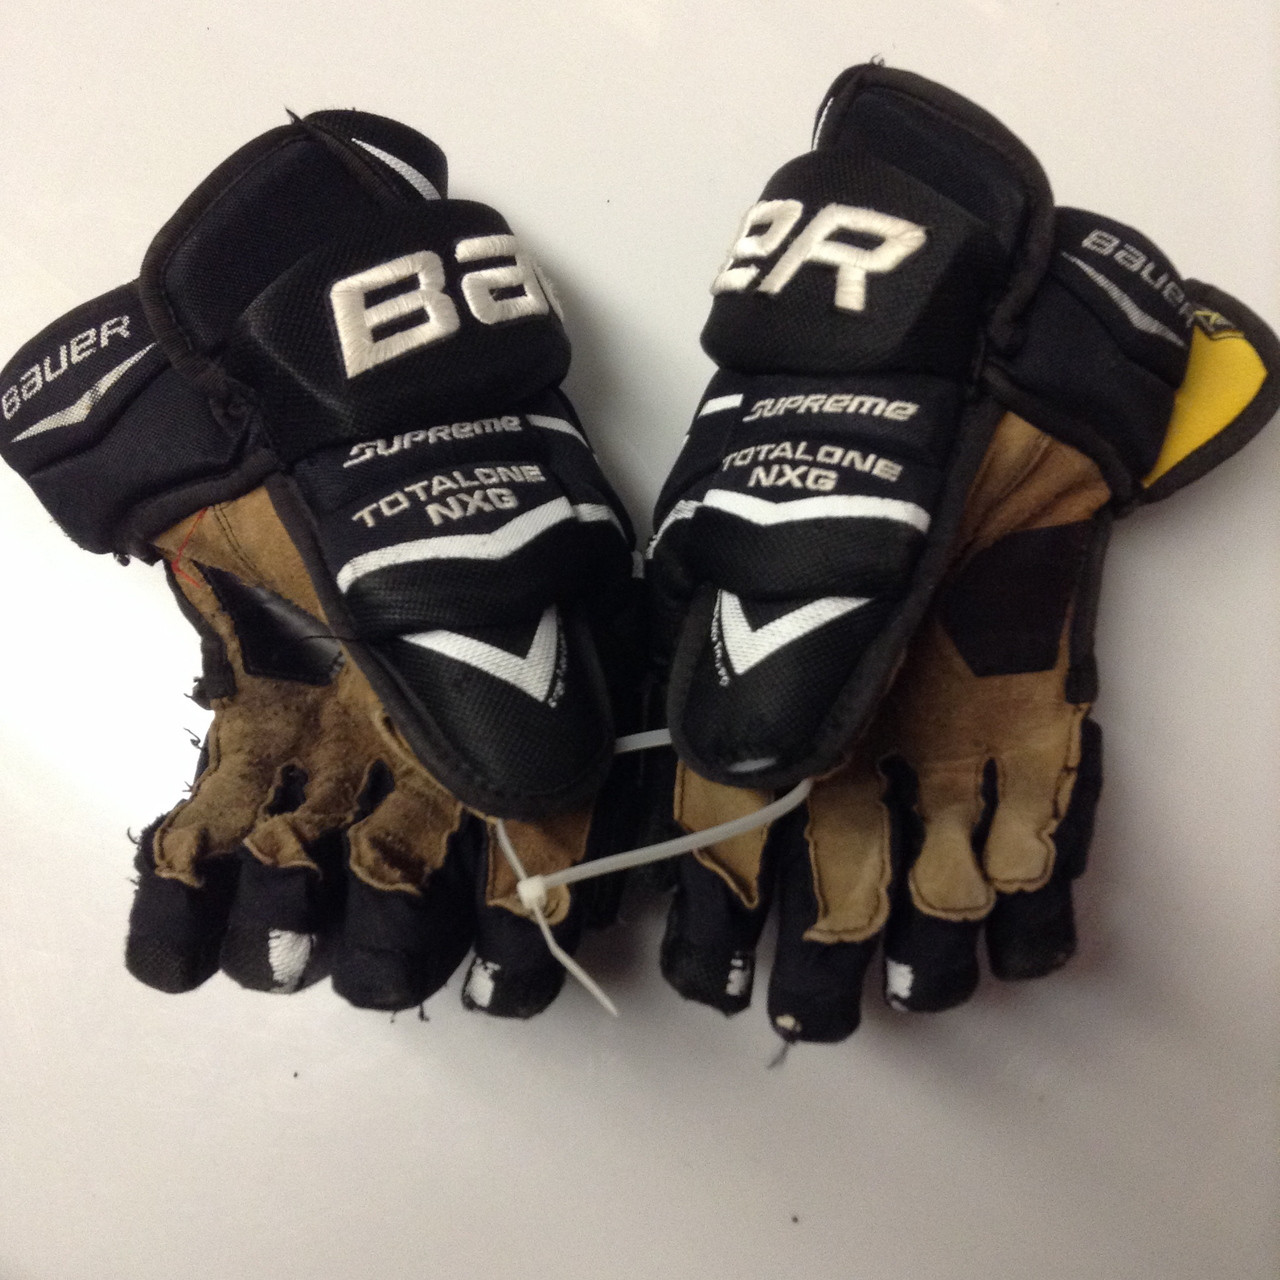 Bauer Supreme Totalone NXG Pro Custom Pro Stock Hockey Gloves Used Black  15" NHL #16 - DK's Hockey Shop